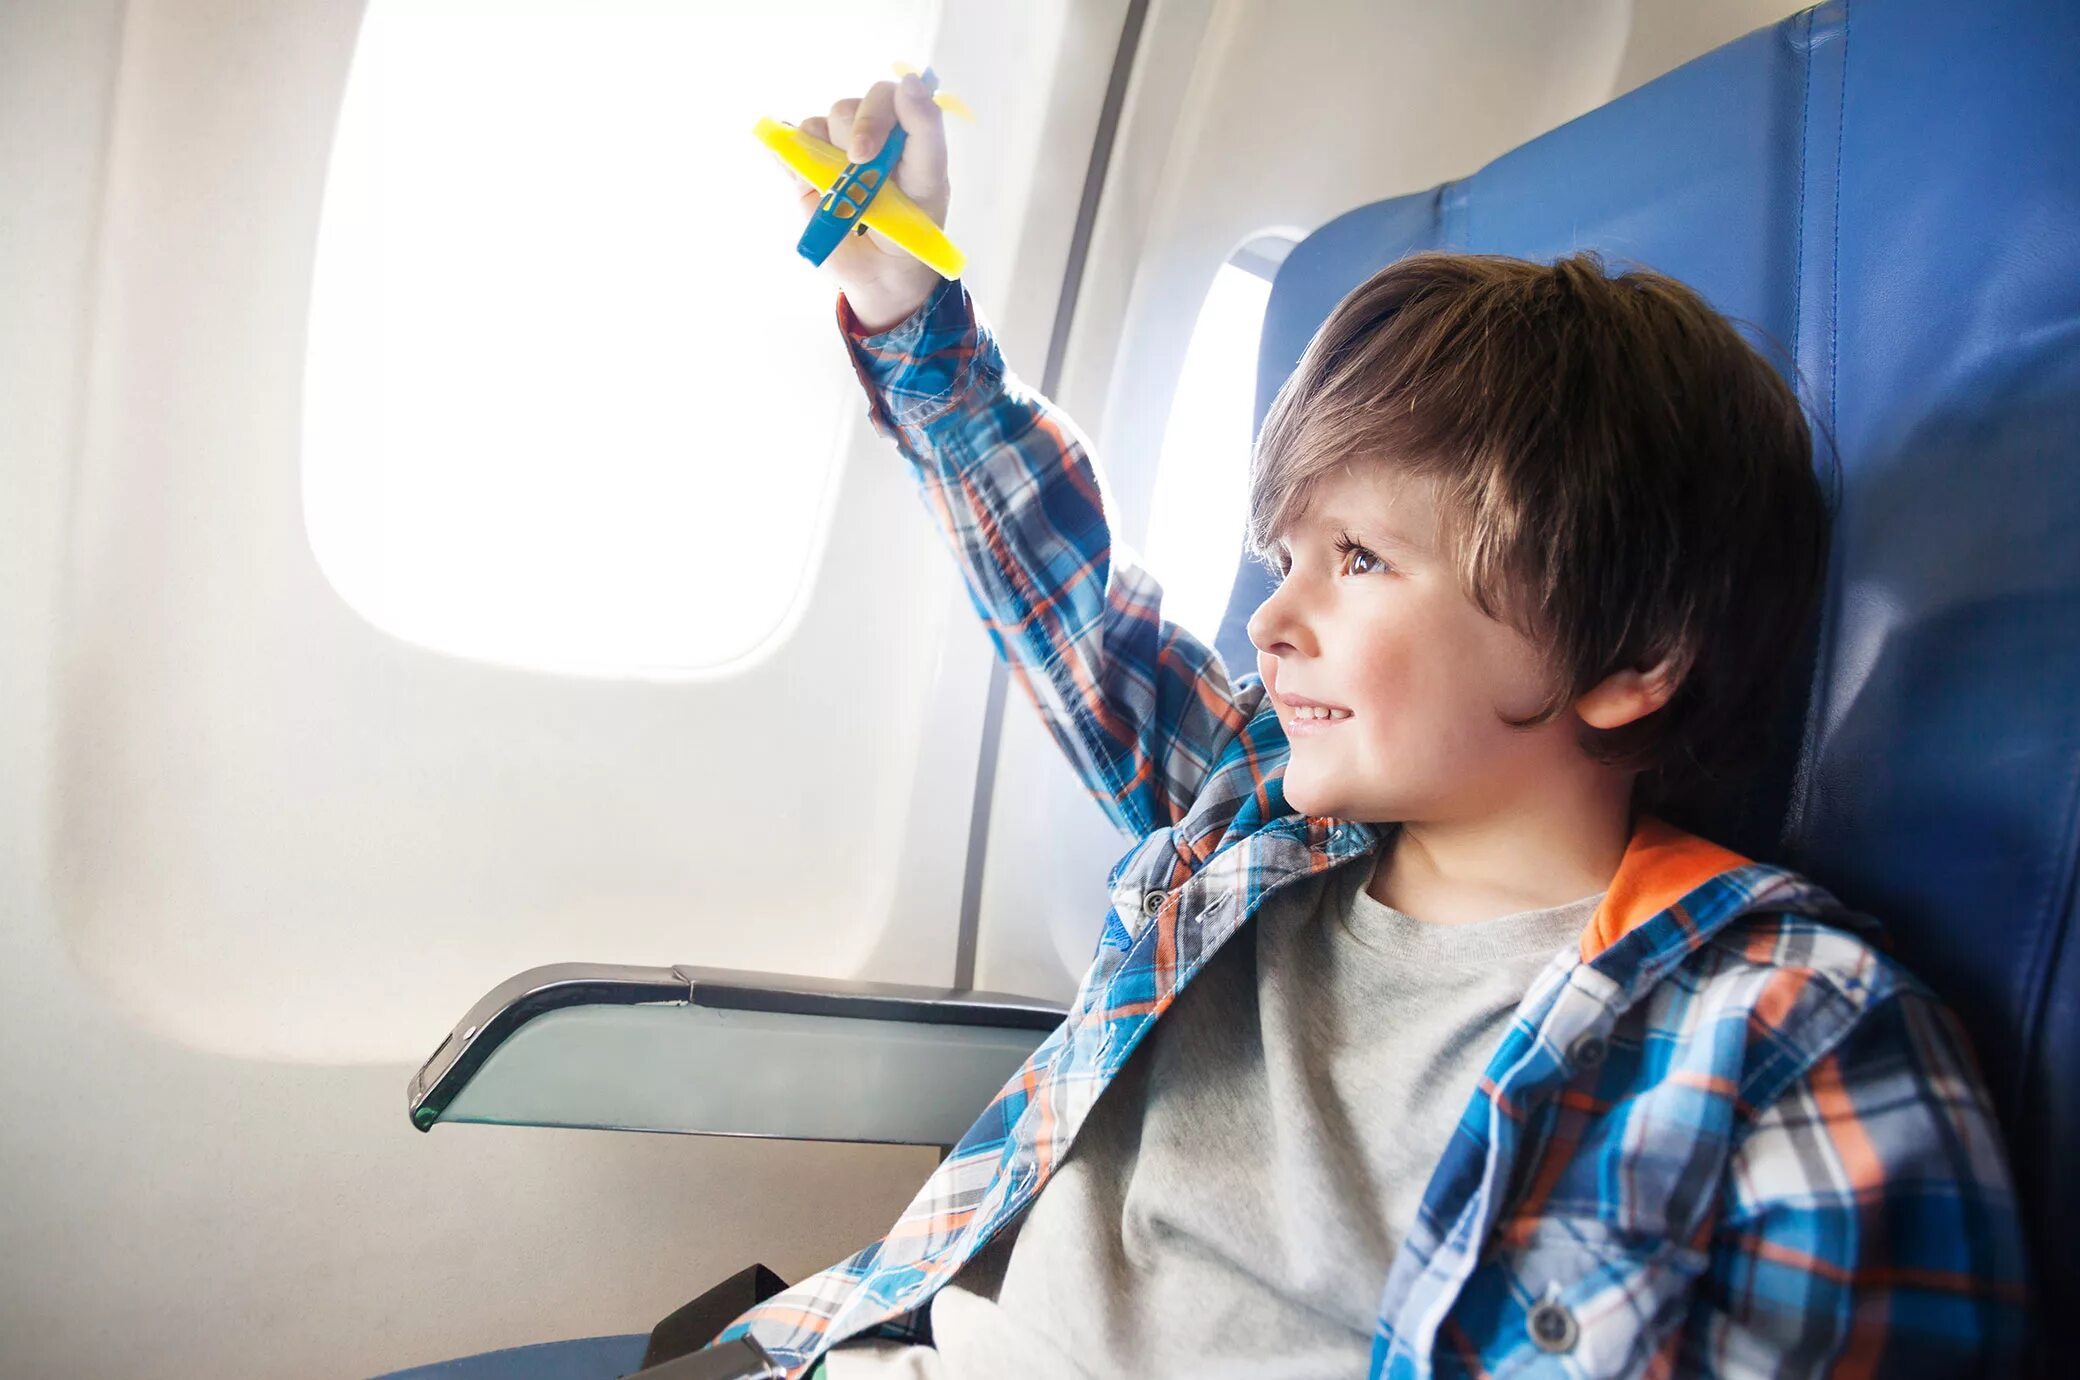 Самолет для детей. Для мальчиков самолёты. Путешествие на самолете для детей. Дети путешествуют. Дети в самолете до скольки лет